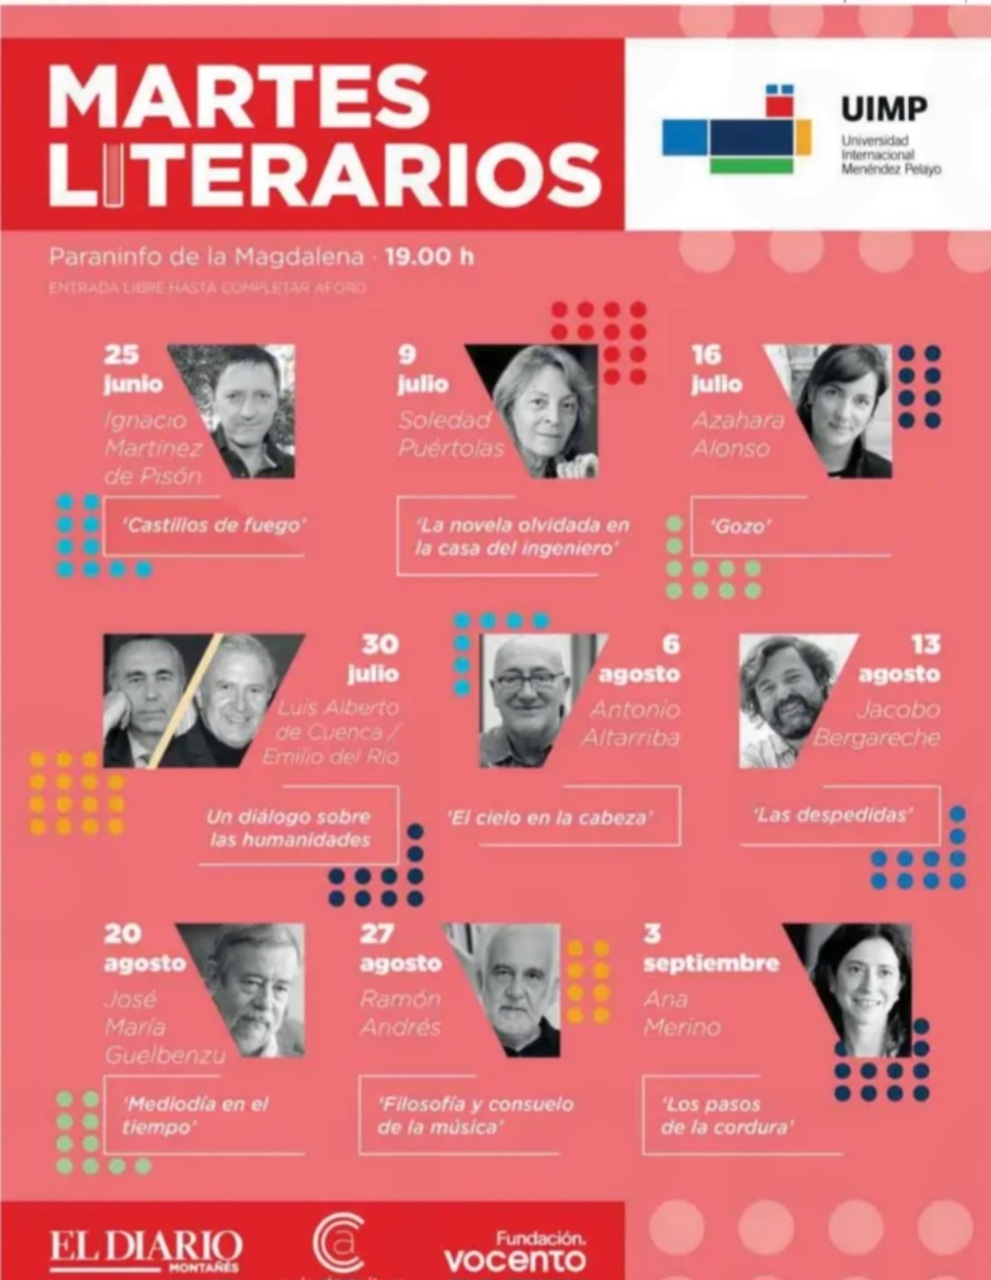 Martes literario con Luis Alberto de Cuenca y Emilio del Río